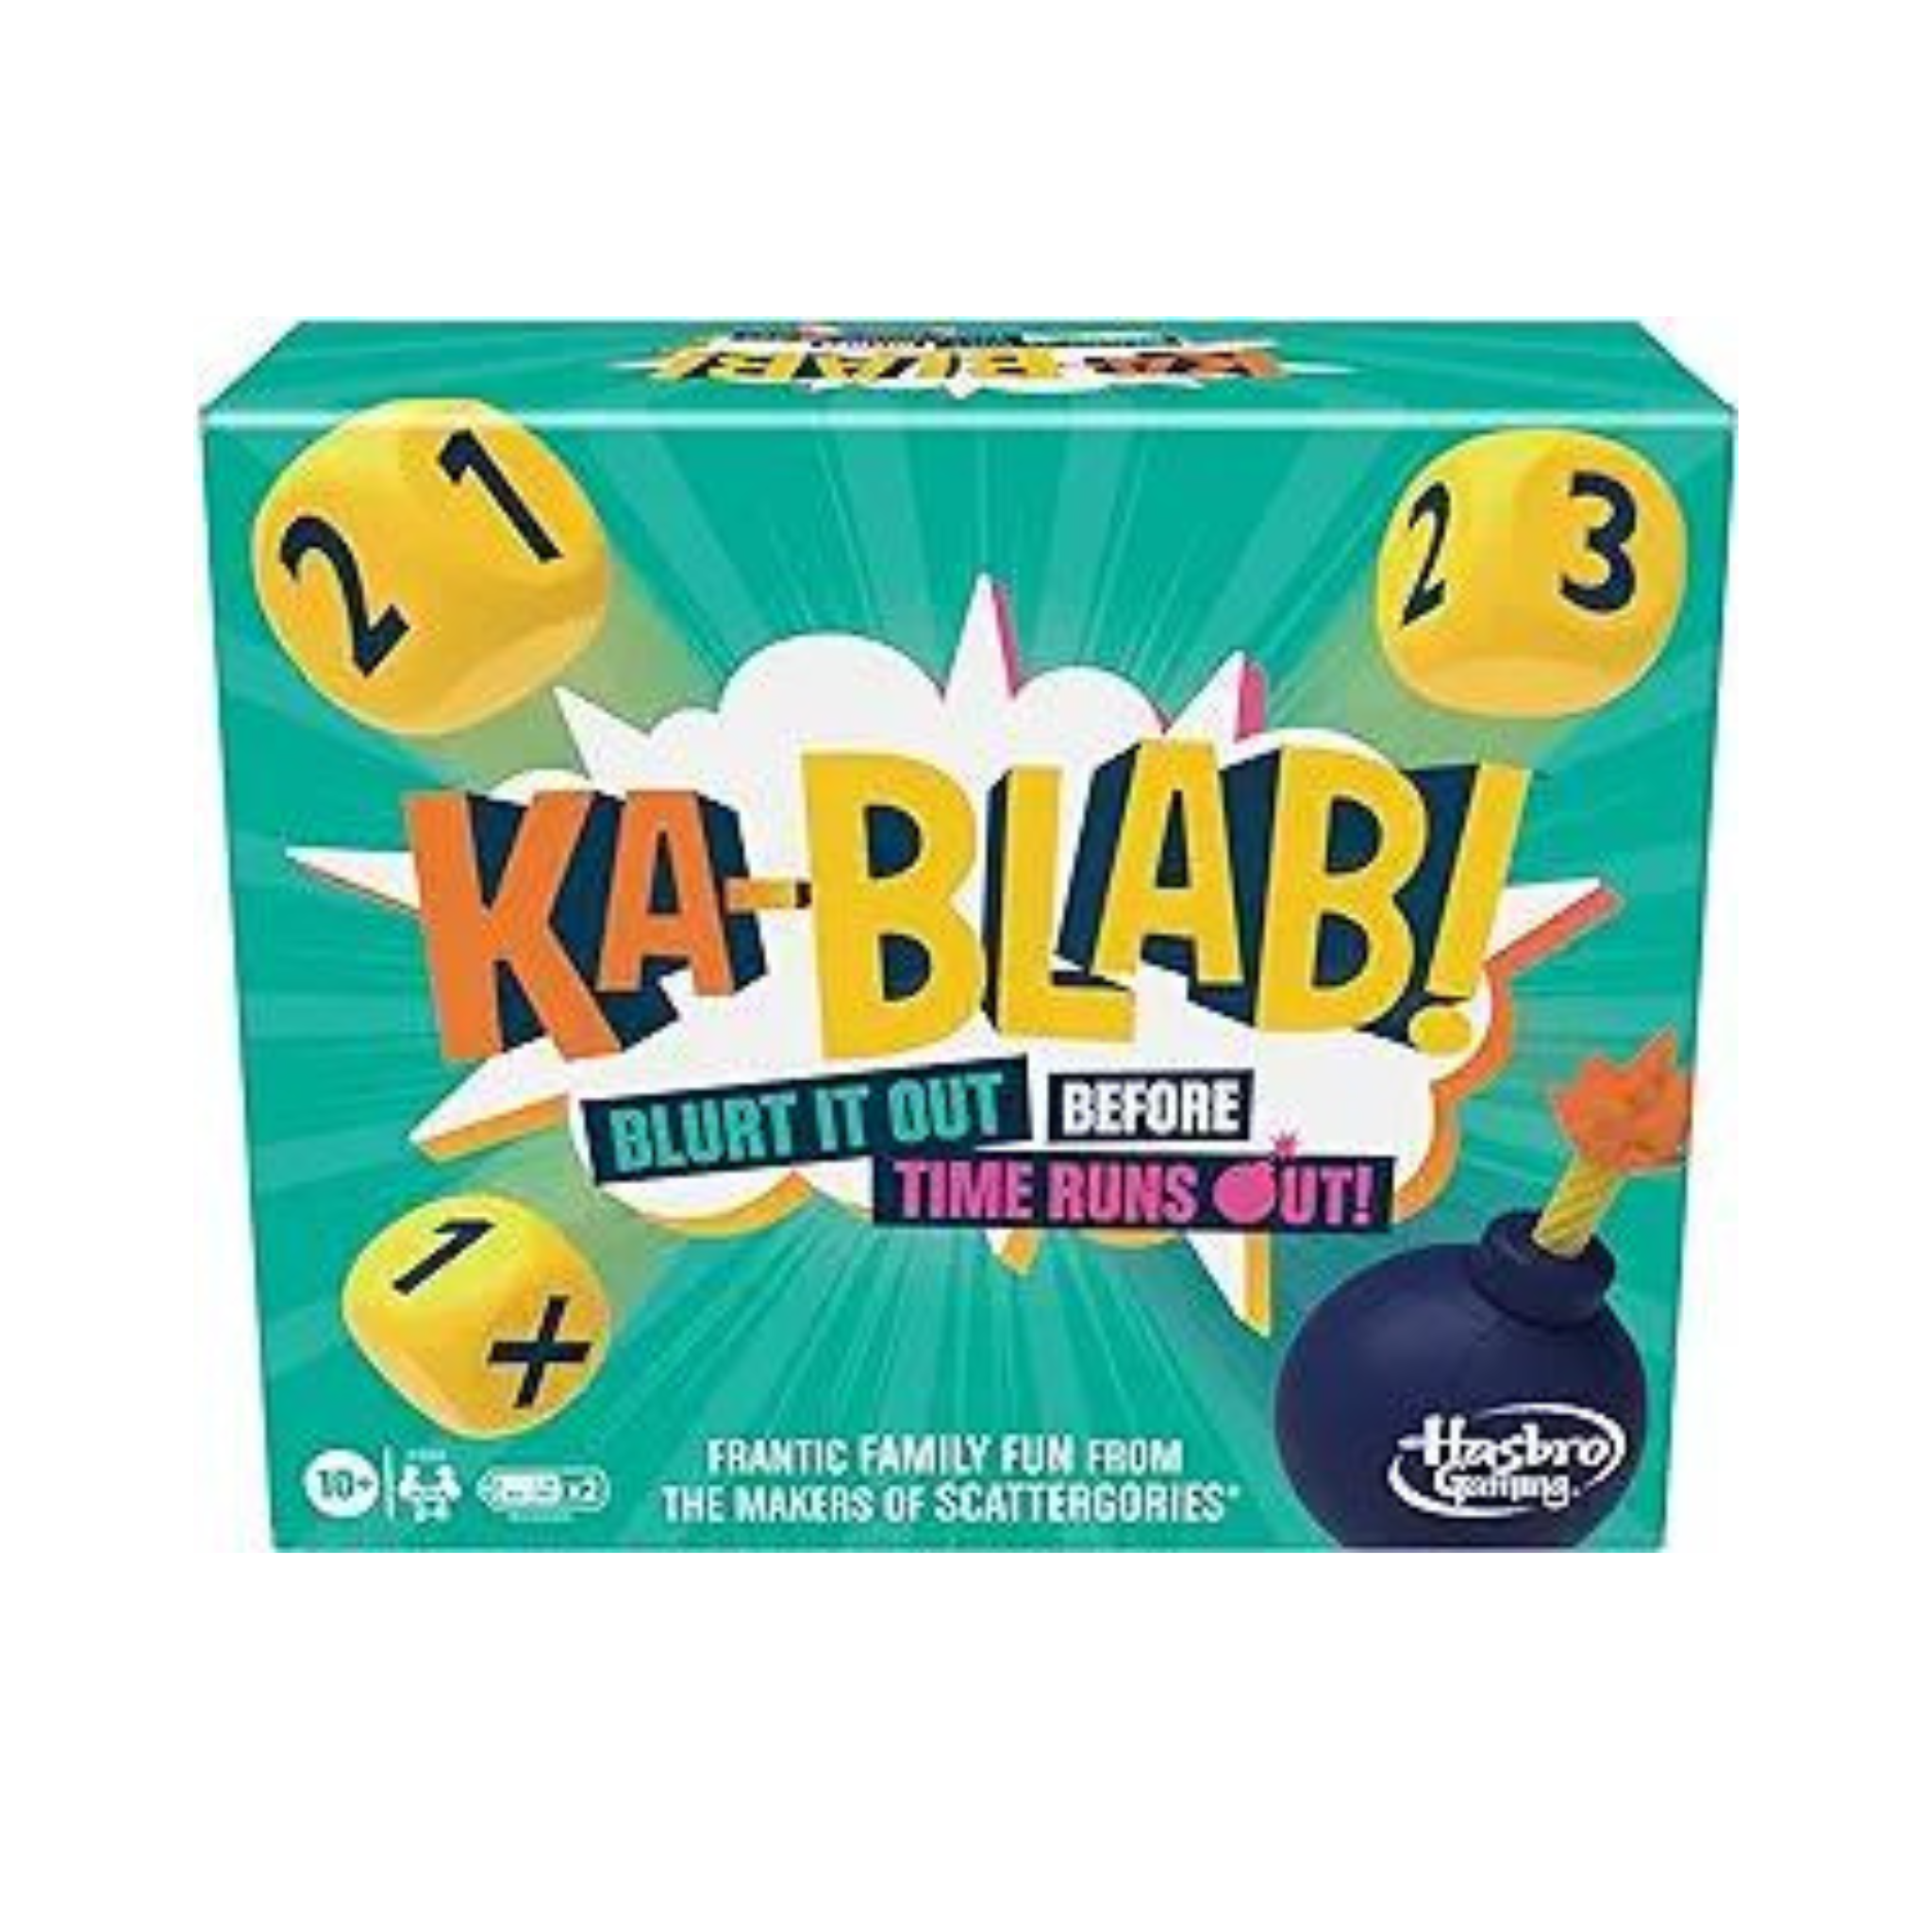 Hasbro Ka-Blab! Game